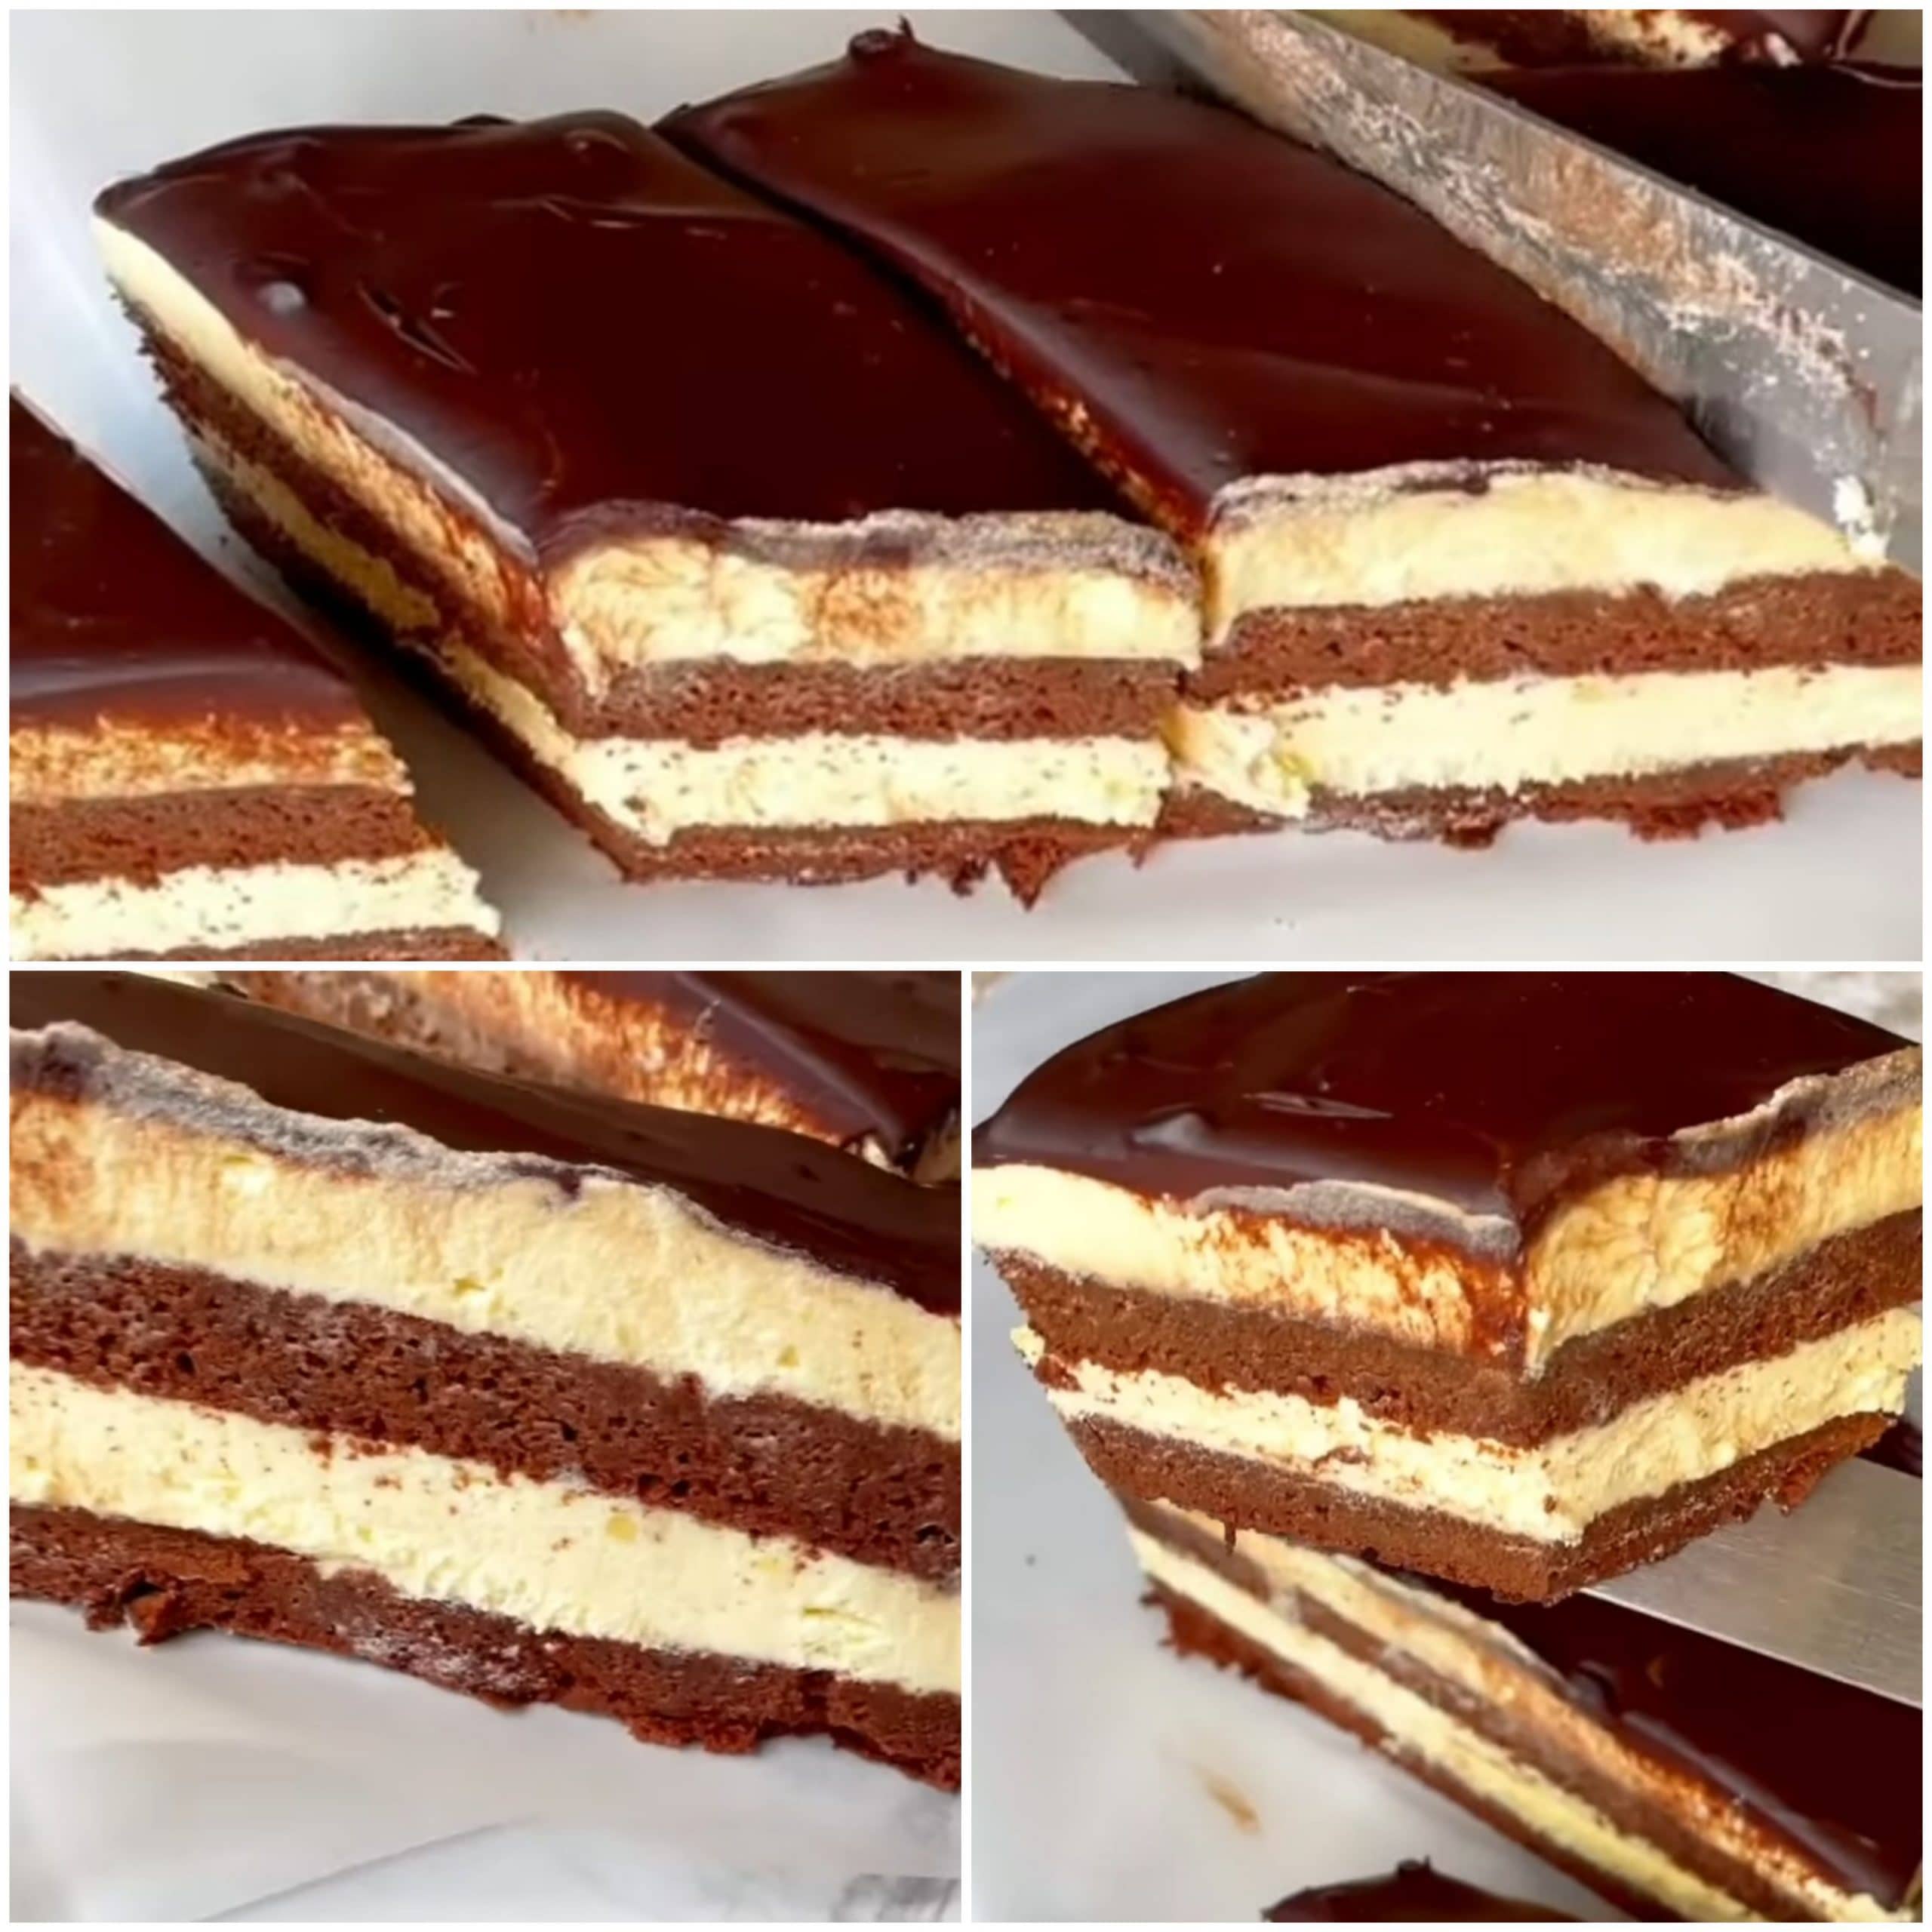 Торт "Ескімо" - найсмачніший домашній десерт, який сподобається всім. Рекомендую приготувати